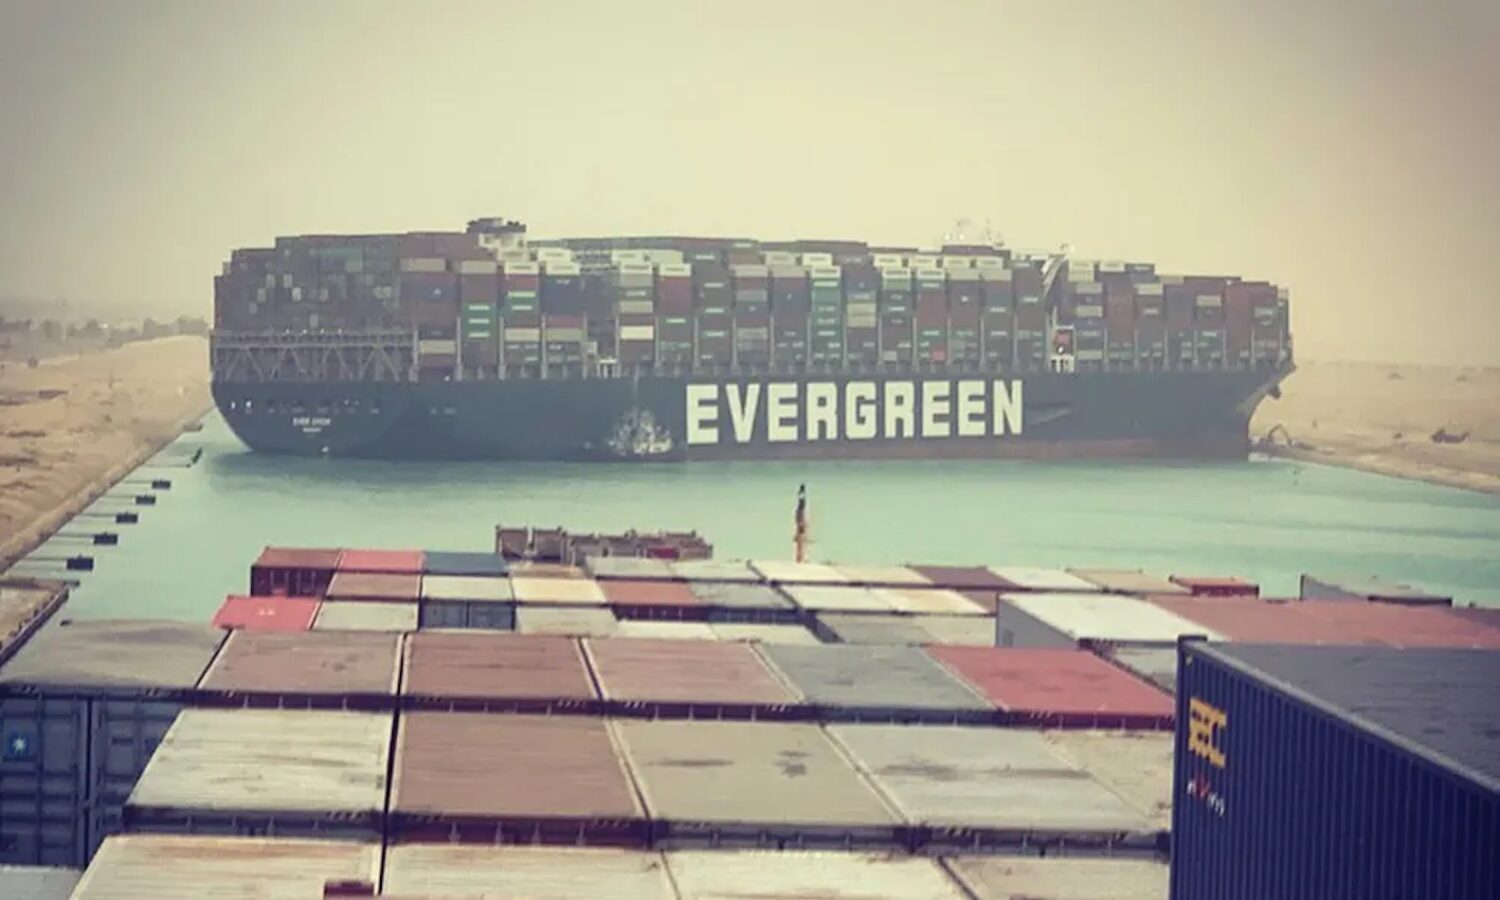 Τεράστιο πλοίο μεταφοράς εμπορευματοκιβωτίων προσάραξε και έκλεισε τη Διώρυγα του Σουέζ (update) - e-Nautilia.gr | Το Ελληνικό Portal για την Ναυτιλία. Τελευταία νέα, άρθρα, Οπτικοακουστικό Υλικό